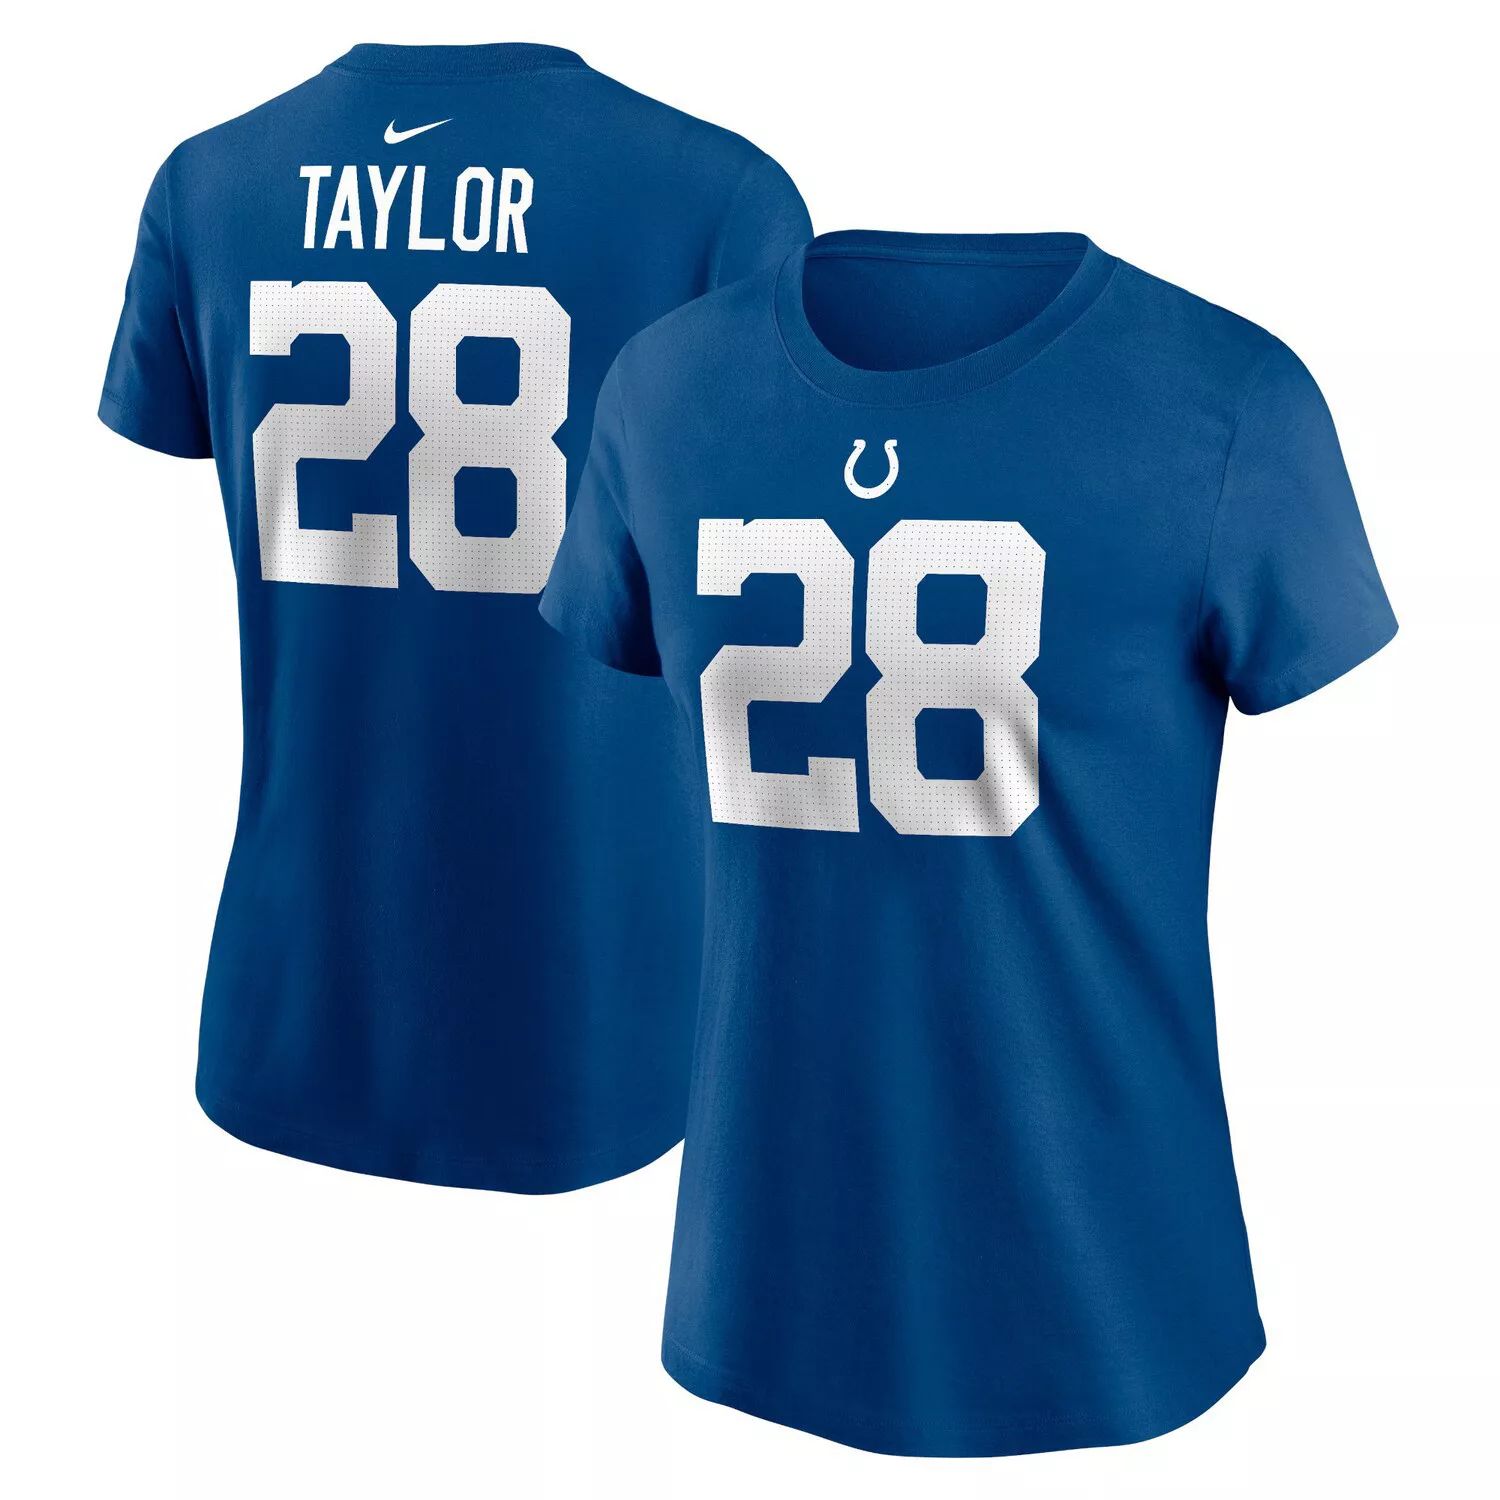 Женская футболка Nike Jonathan Taylor Royal Indianapolis Colts с именем и номером игрока Nike